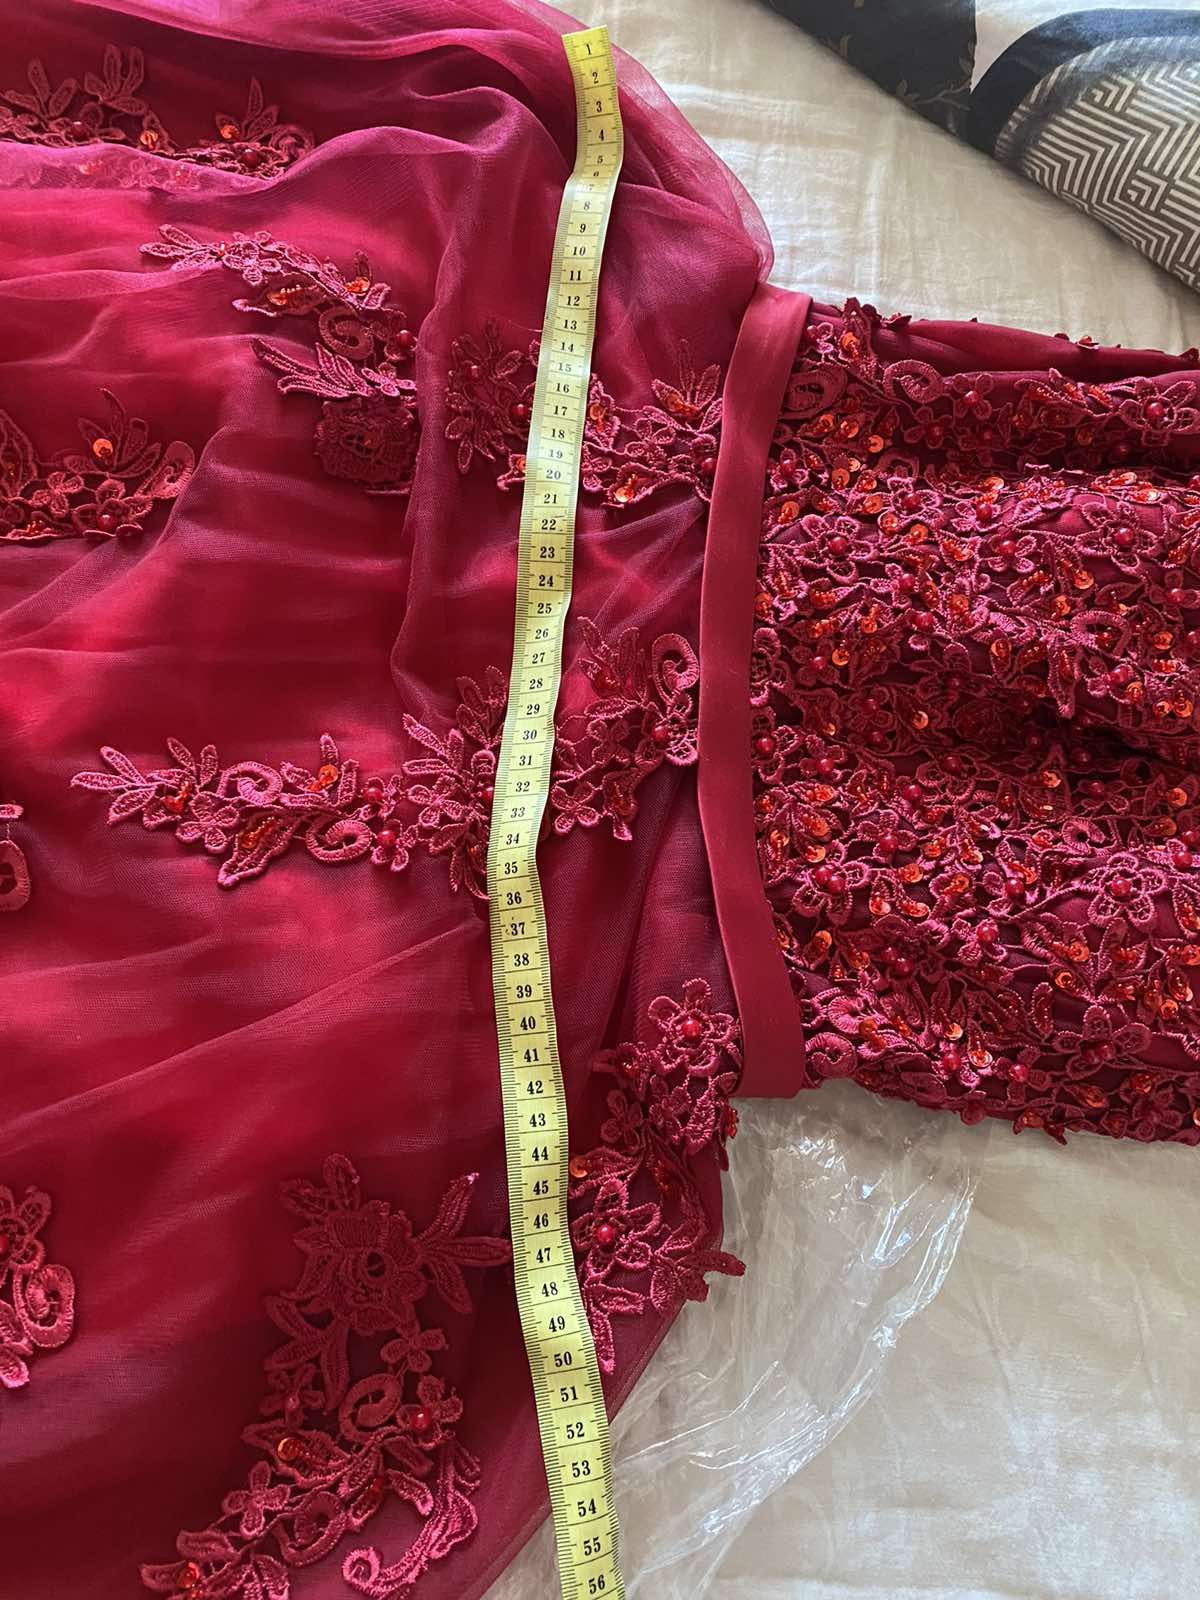 випускне плаття, червоного кольору